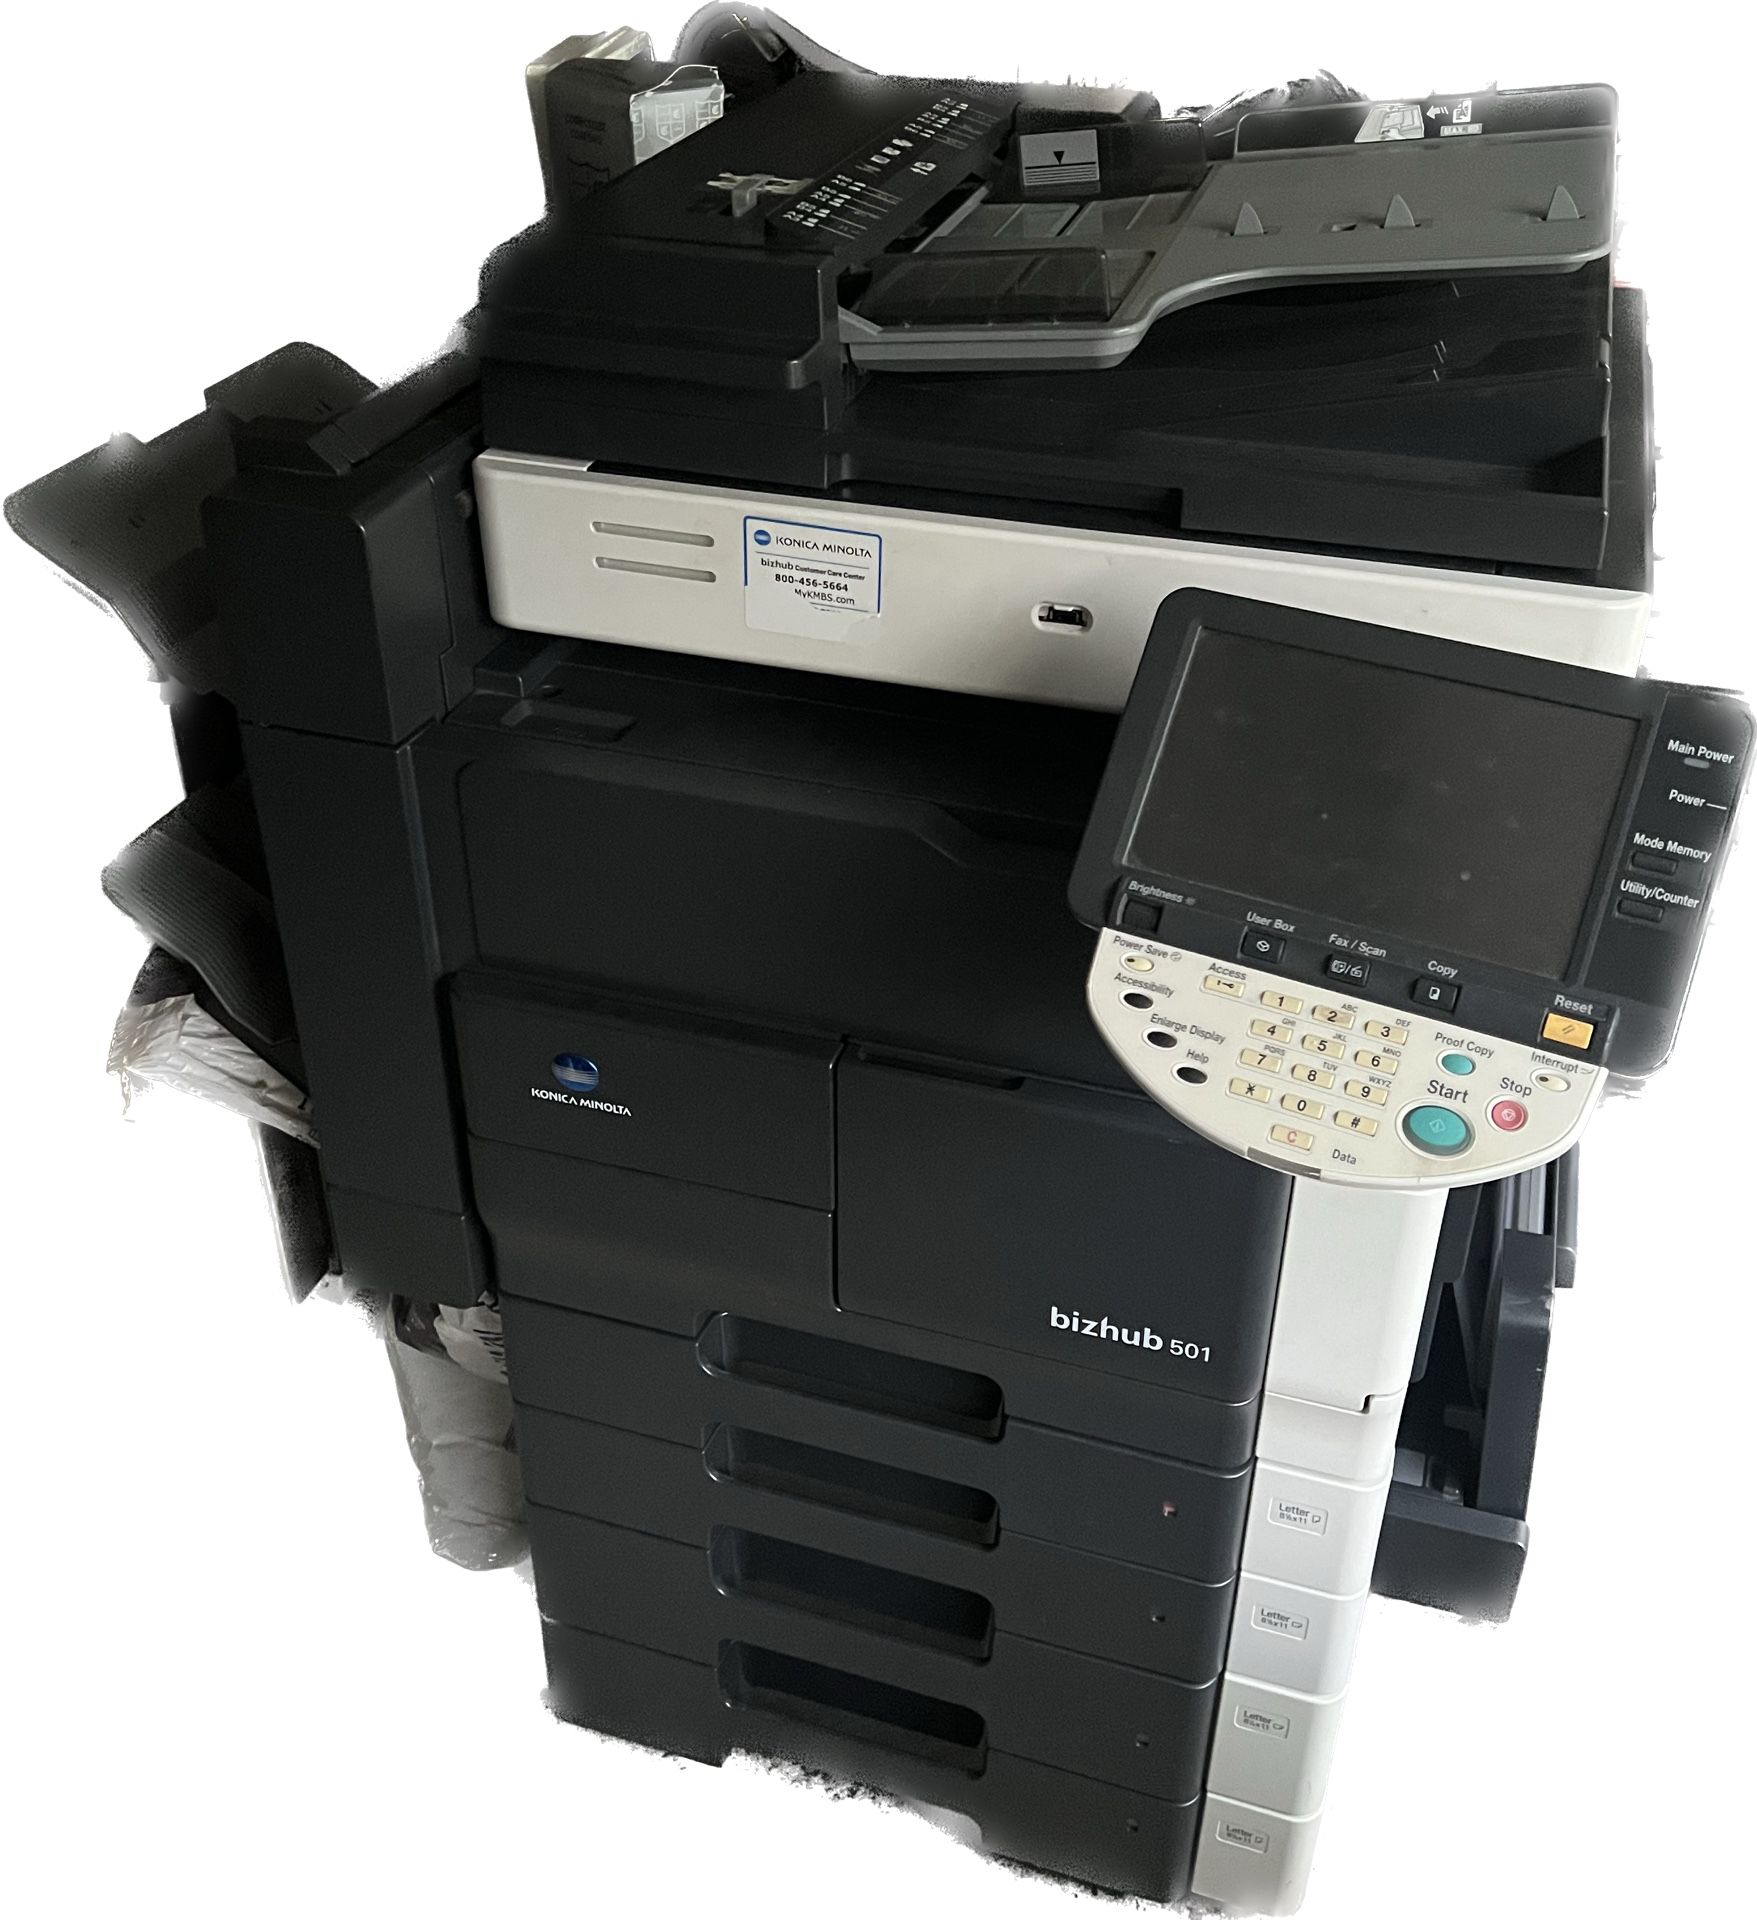 Konica Minolta Bizhub 501 Scanner/Printer/Copier/Fax